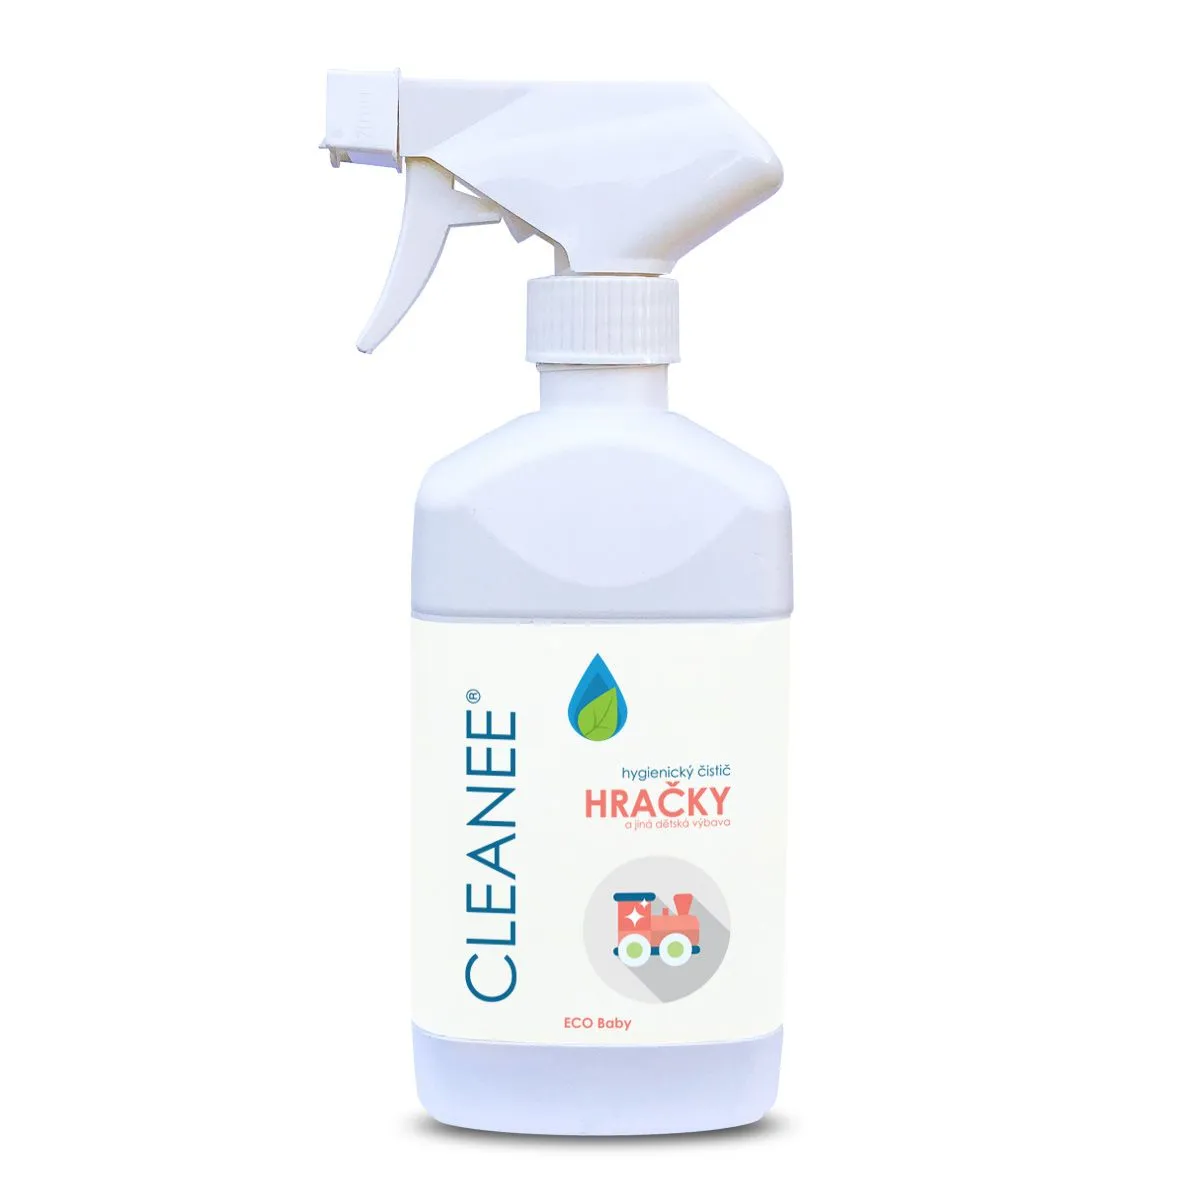 CLEANEE ECO Baby Hygienický čistič HRAČKY